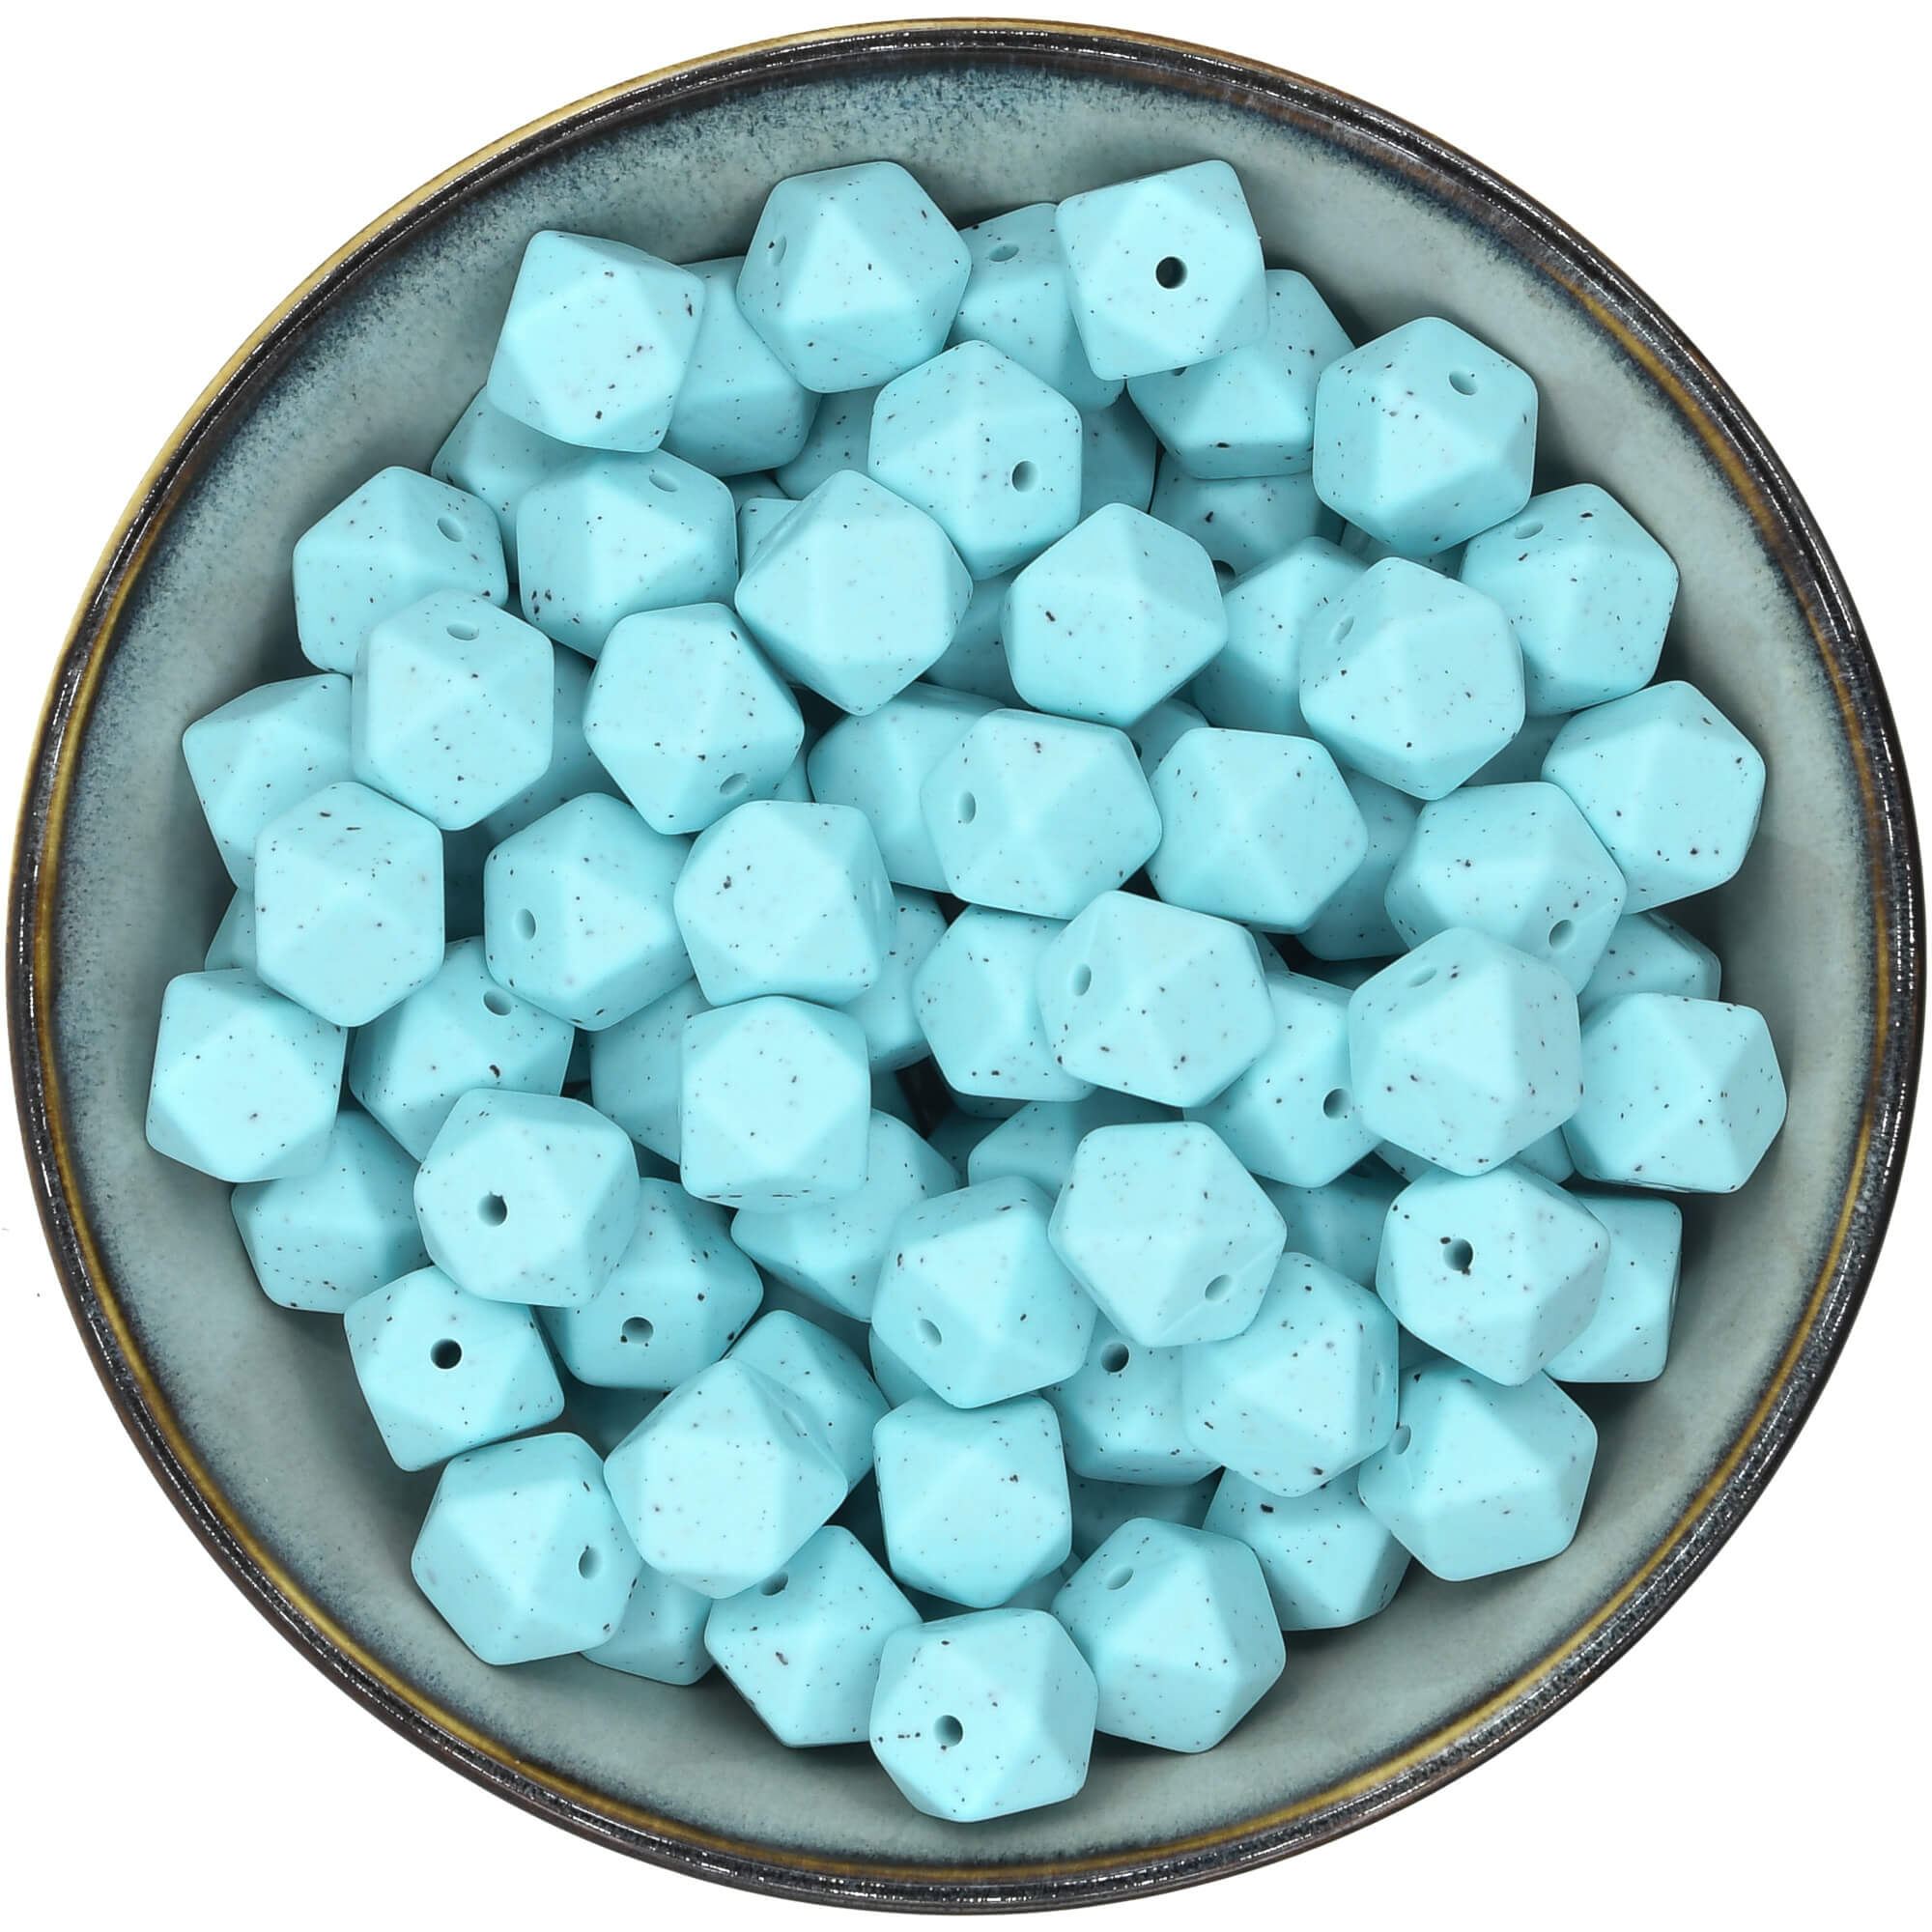 Siliconen mini-hexagon van 14 mm in de kleur Zachtturquoise met zwarte spikkels